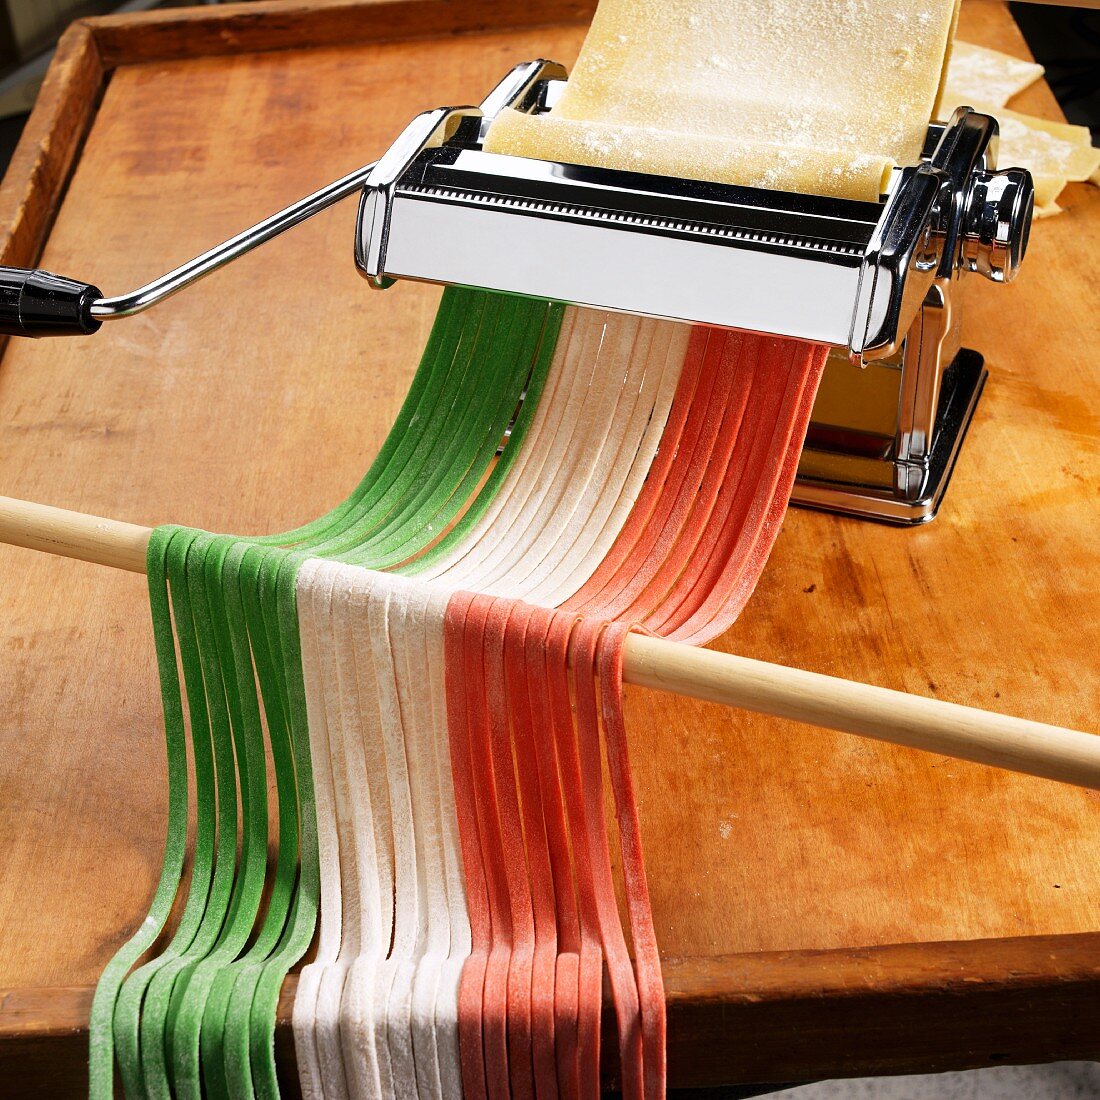 Nudelmaschine mit selbstgemachten bunten italienischen Bandnudeln